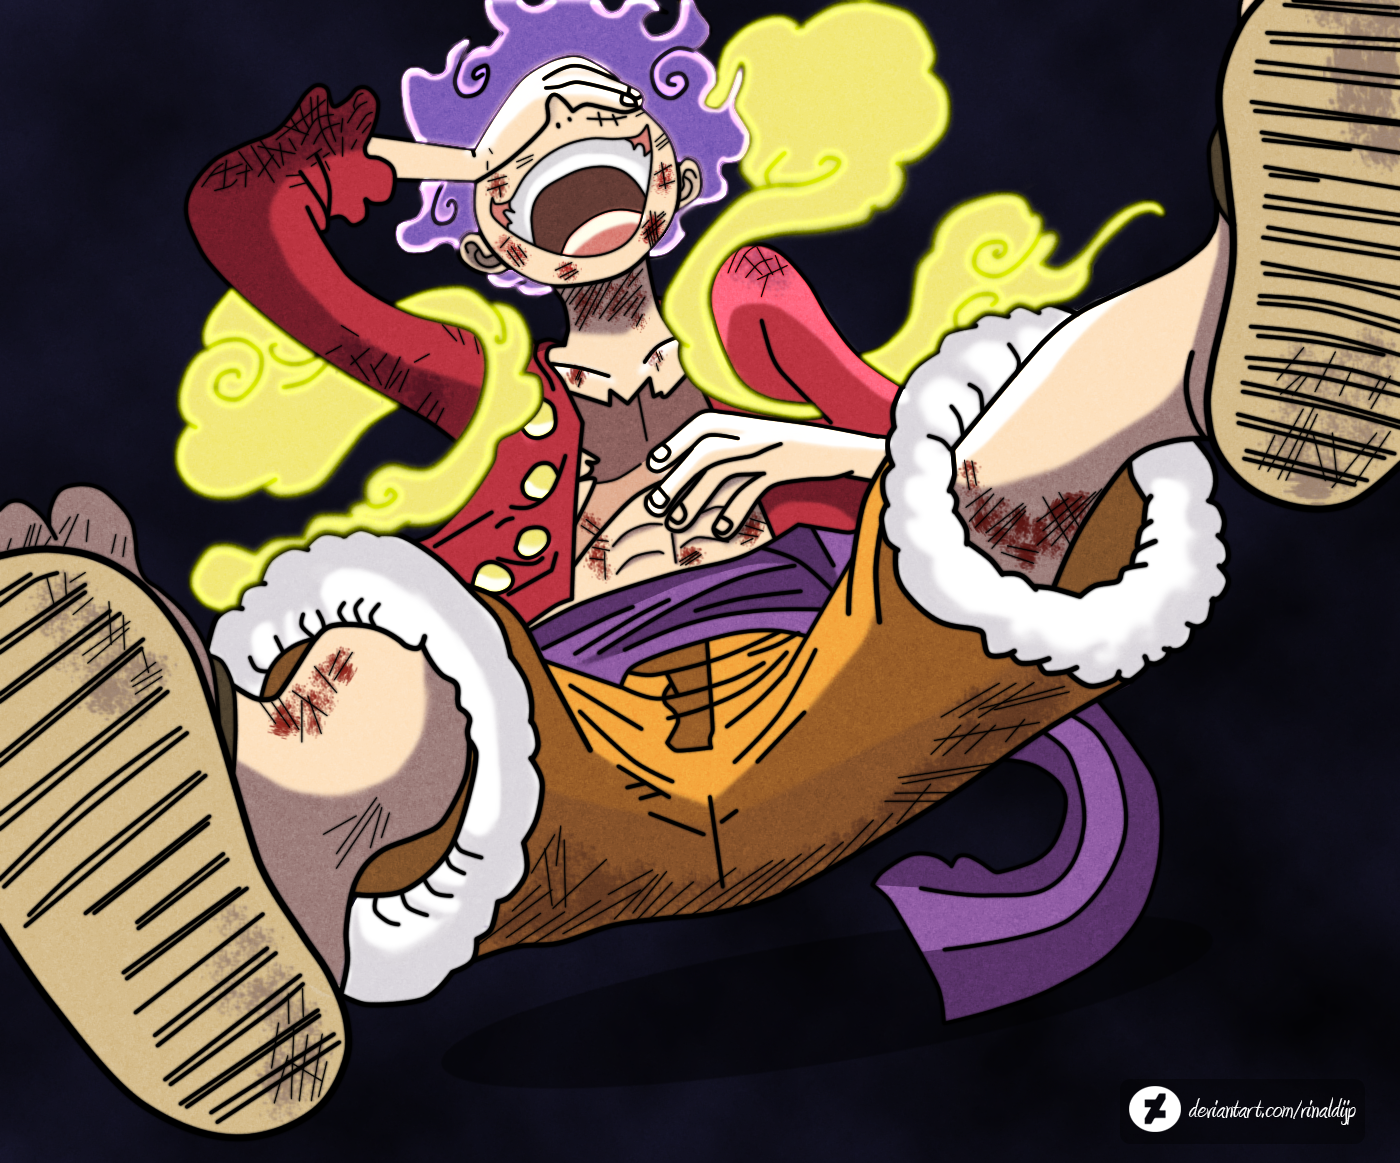 One Piece 1044 Gear 5 Luffy by RinaldiJP on DeviantArt